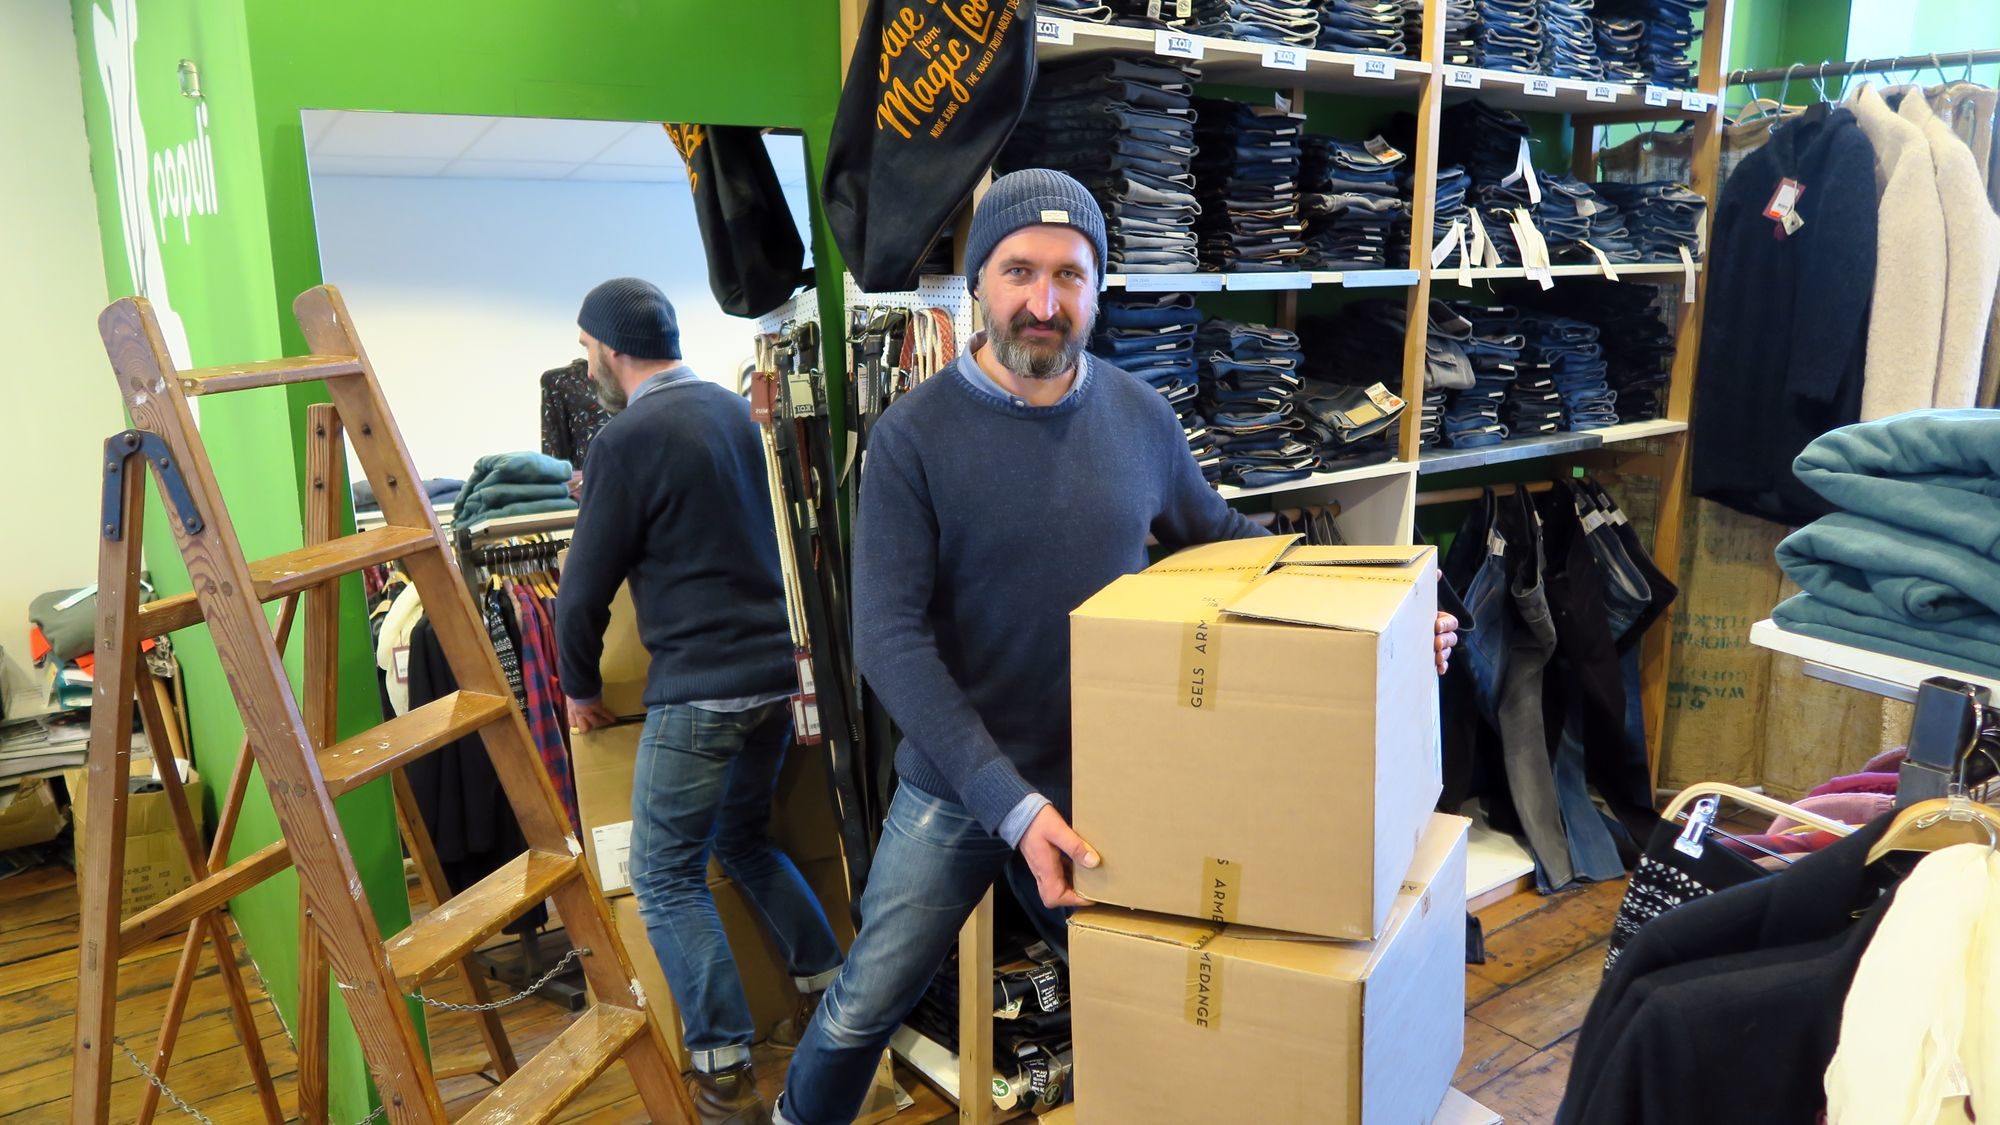 Hat ne Menge Kisten zu räumen: Populi-Verkäufer Falk Kühnscherf